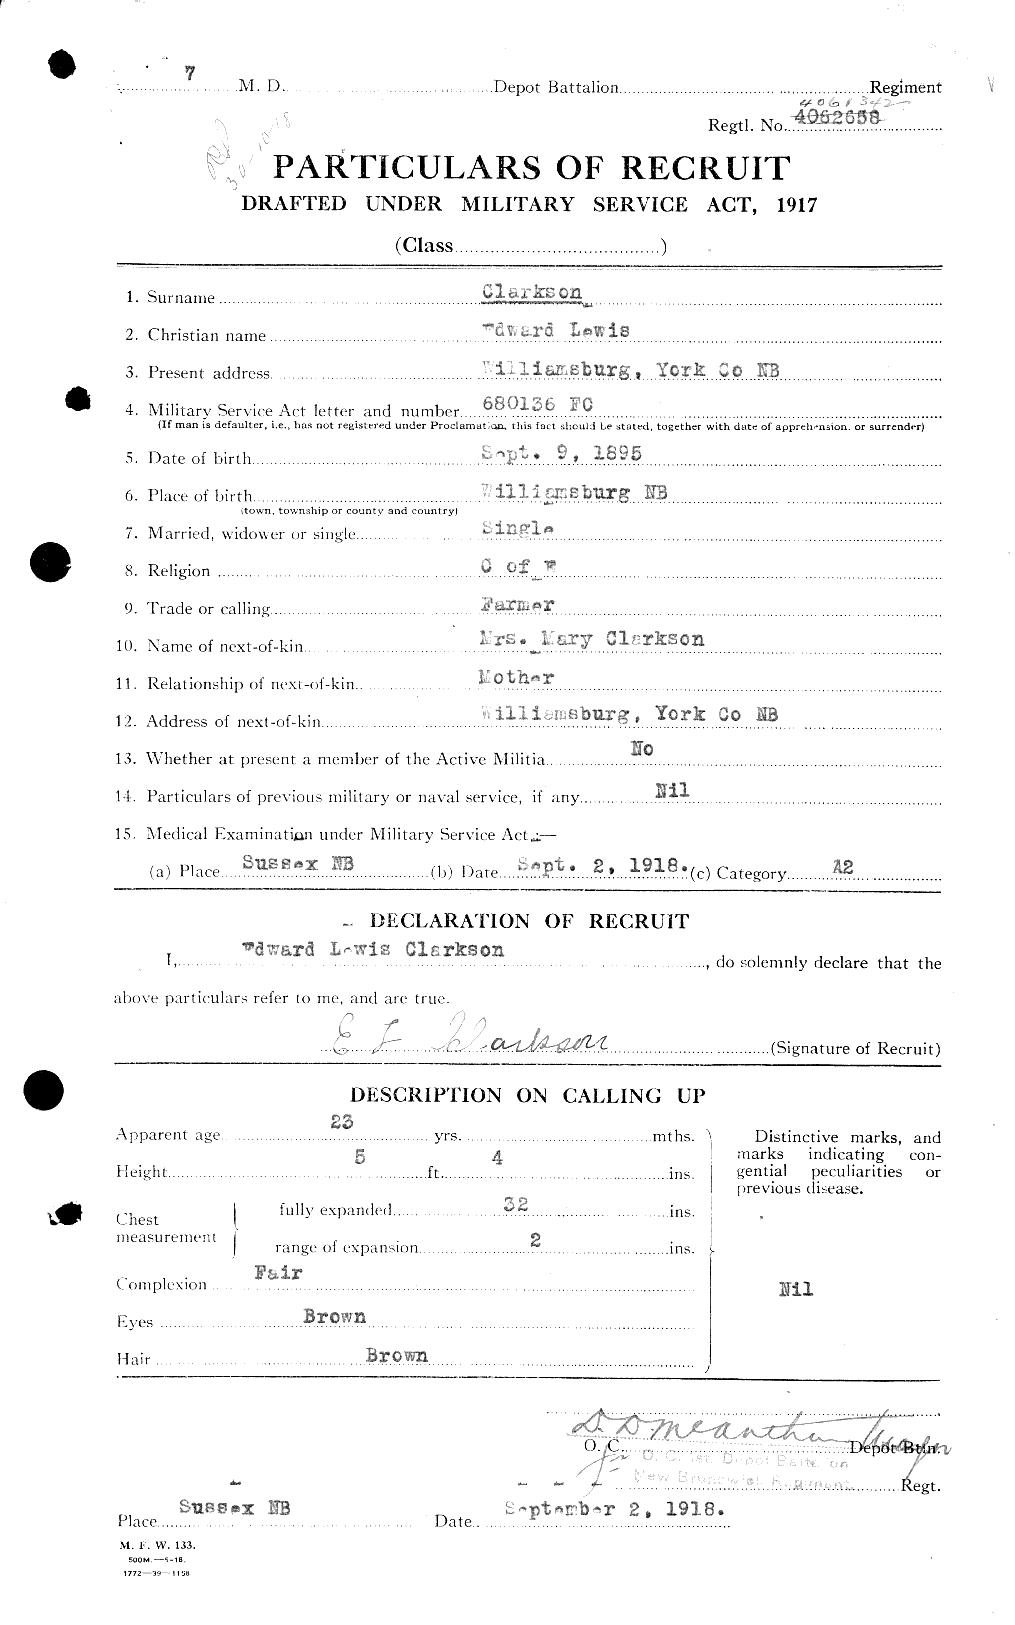 Dossiers du Personnel de la Première Guerre mondiale - CEC 023632a